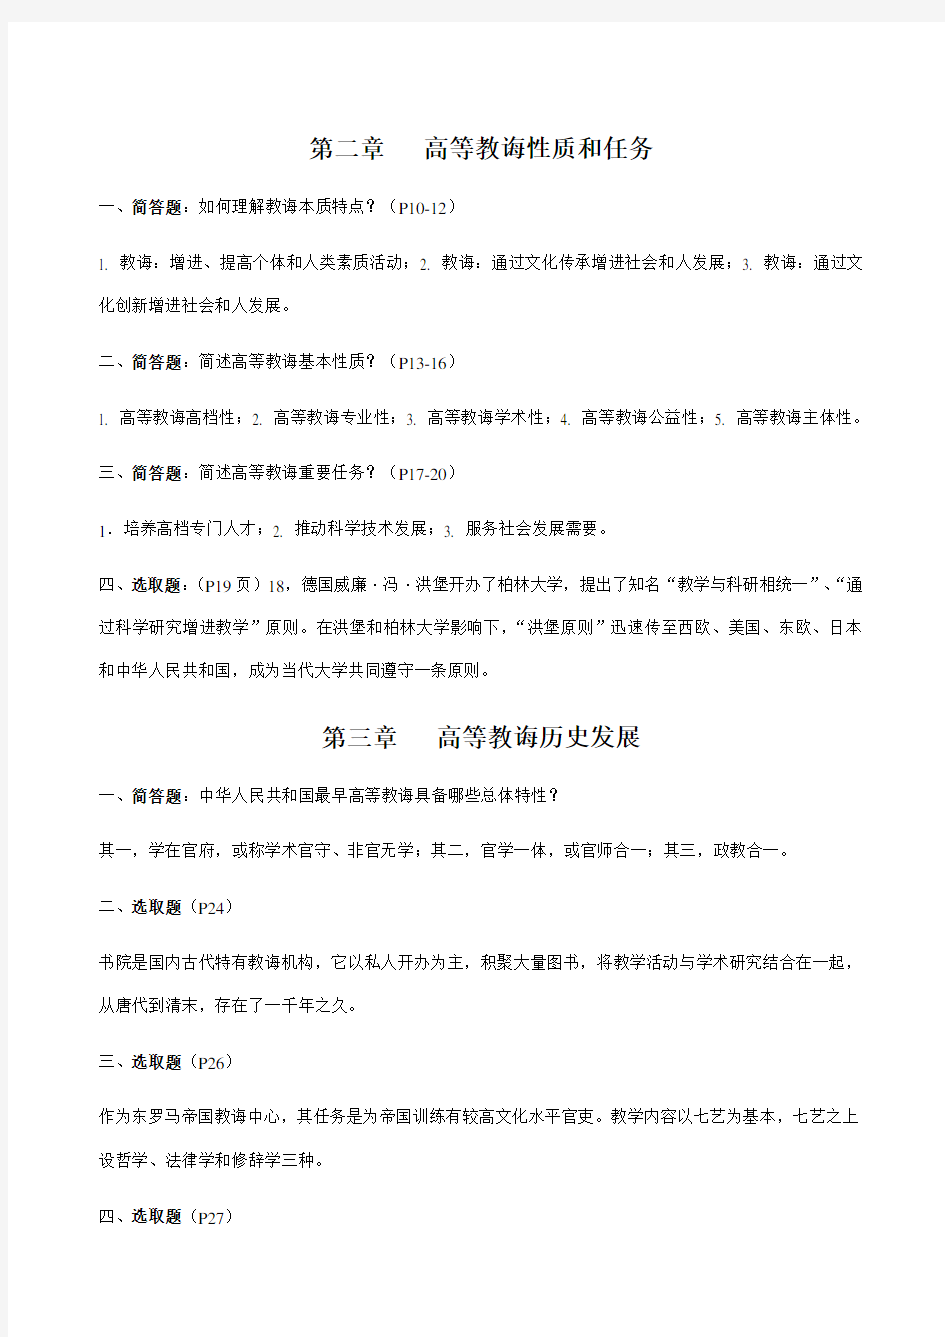 2021年江苏省高校教师资格考试高等教育学知识点整理汇总全